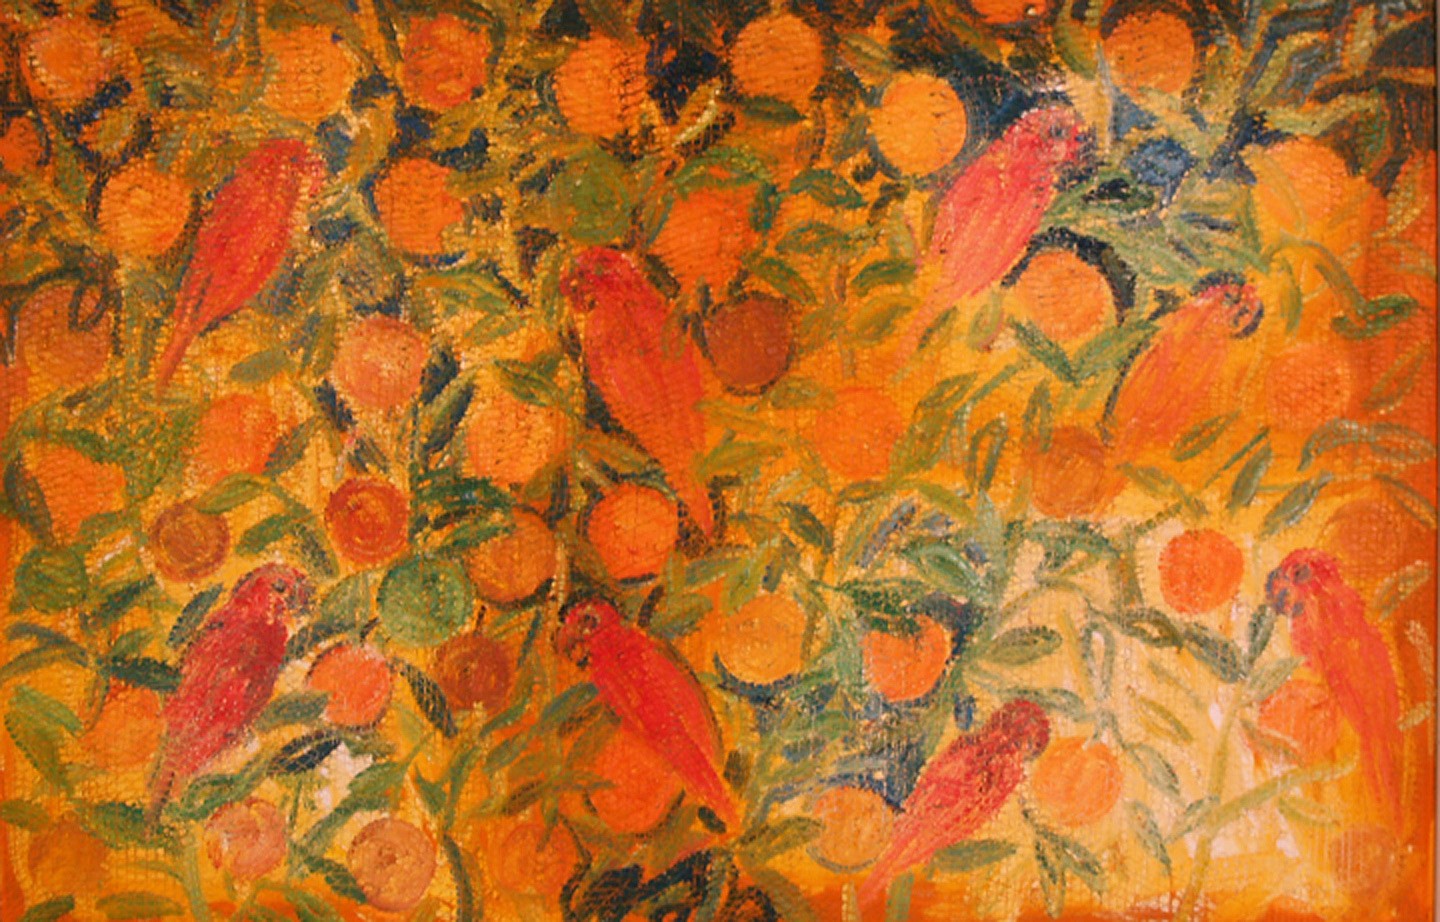 Hunt Slonem, Seville Oranges, 2002
Oil on Canvas, 48 x 72 inches
SLON0042